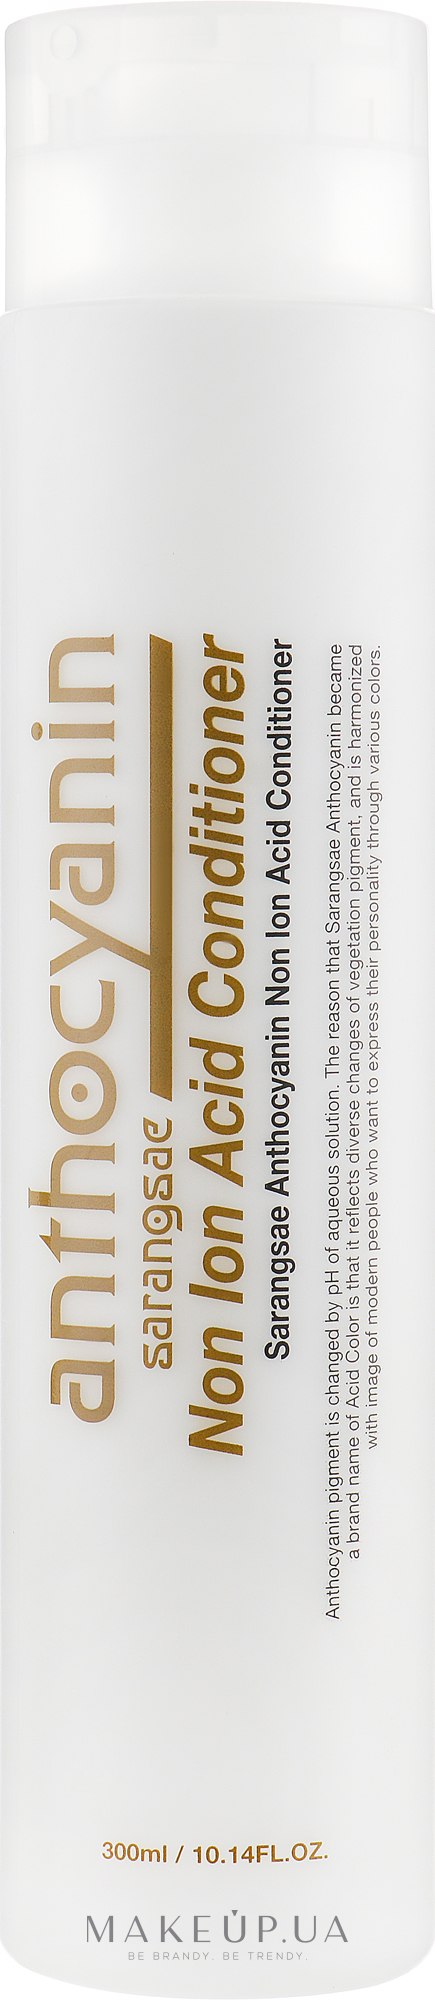 Неионный кондиционер для волос - Sarangsae Anthocyanin Non Ion Conditioner — фото 300ml